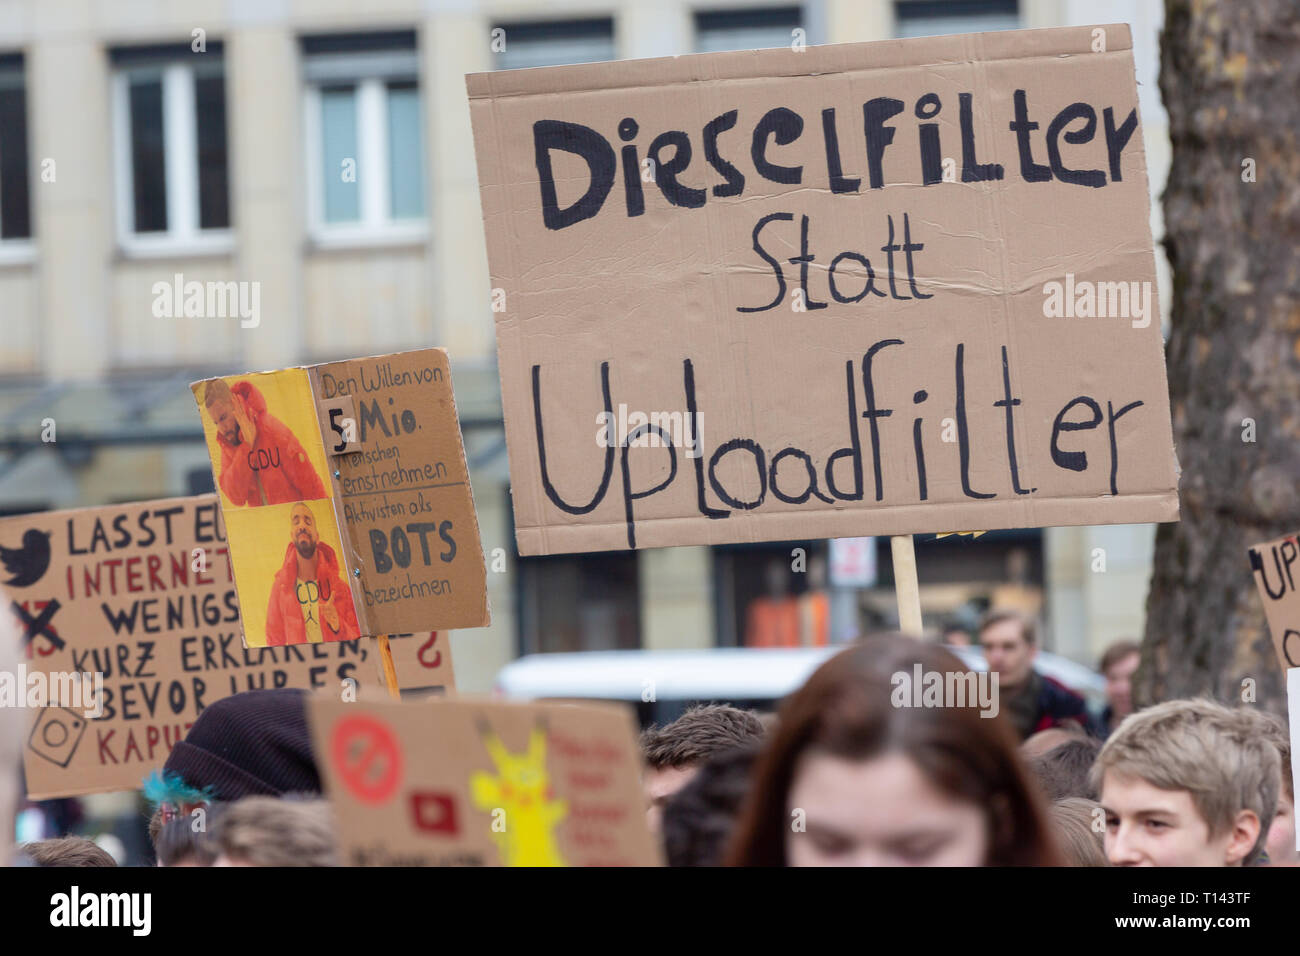 Colonia, Germania, 23 marzo 2019: cartelloni vengono visualizzati durante una manifestazione contro il caricamento del filtro. Billdboard legge ' dieselfilter invece di uploadfilter '. Credito: Juergen schwarz/Alamy Live News Foto Stock